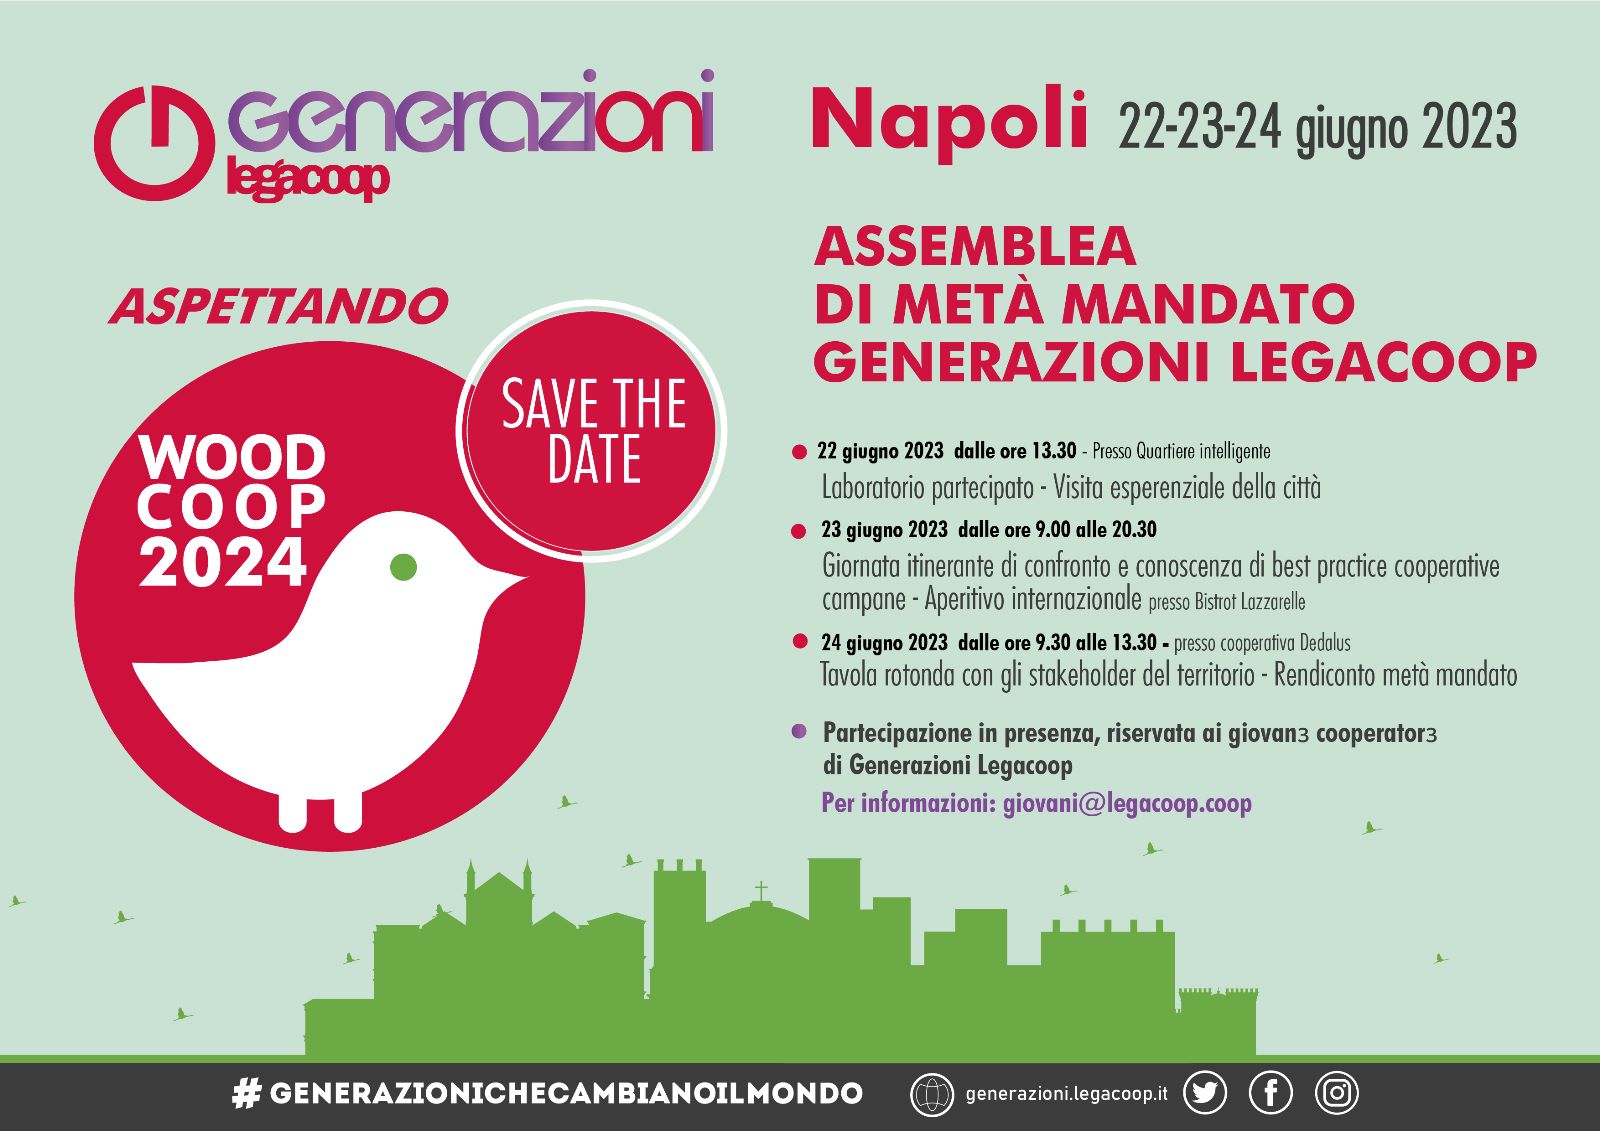 Generazioni Napoli 22-23-24 giugno 2023: Assemblea di metà mandato